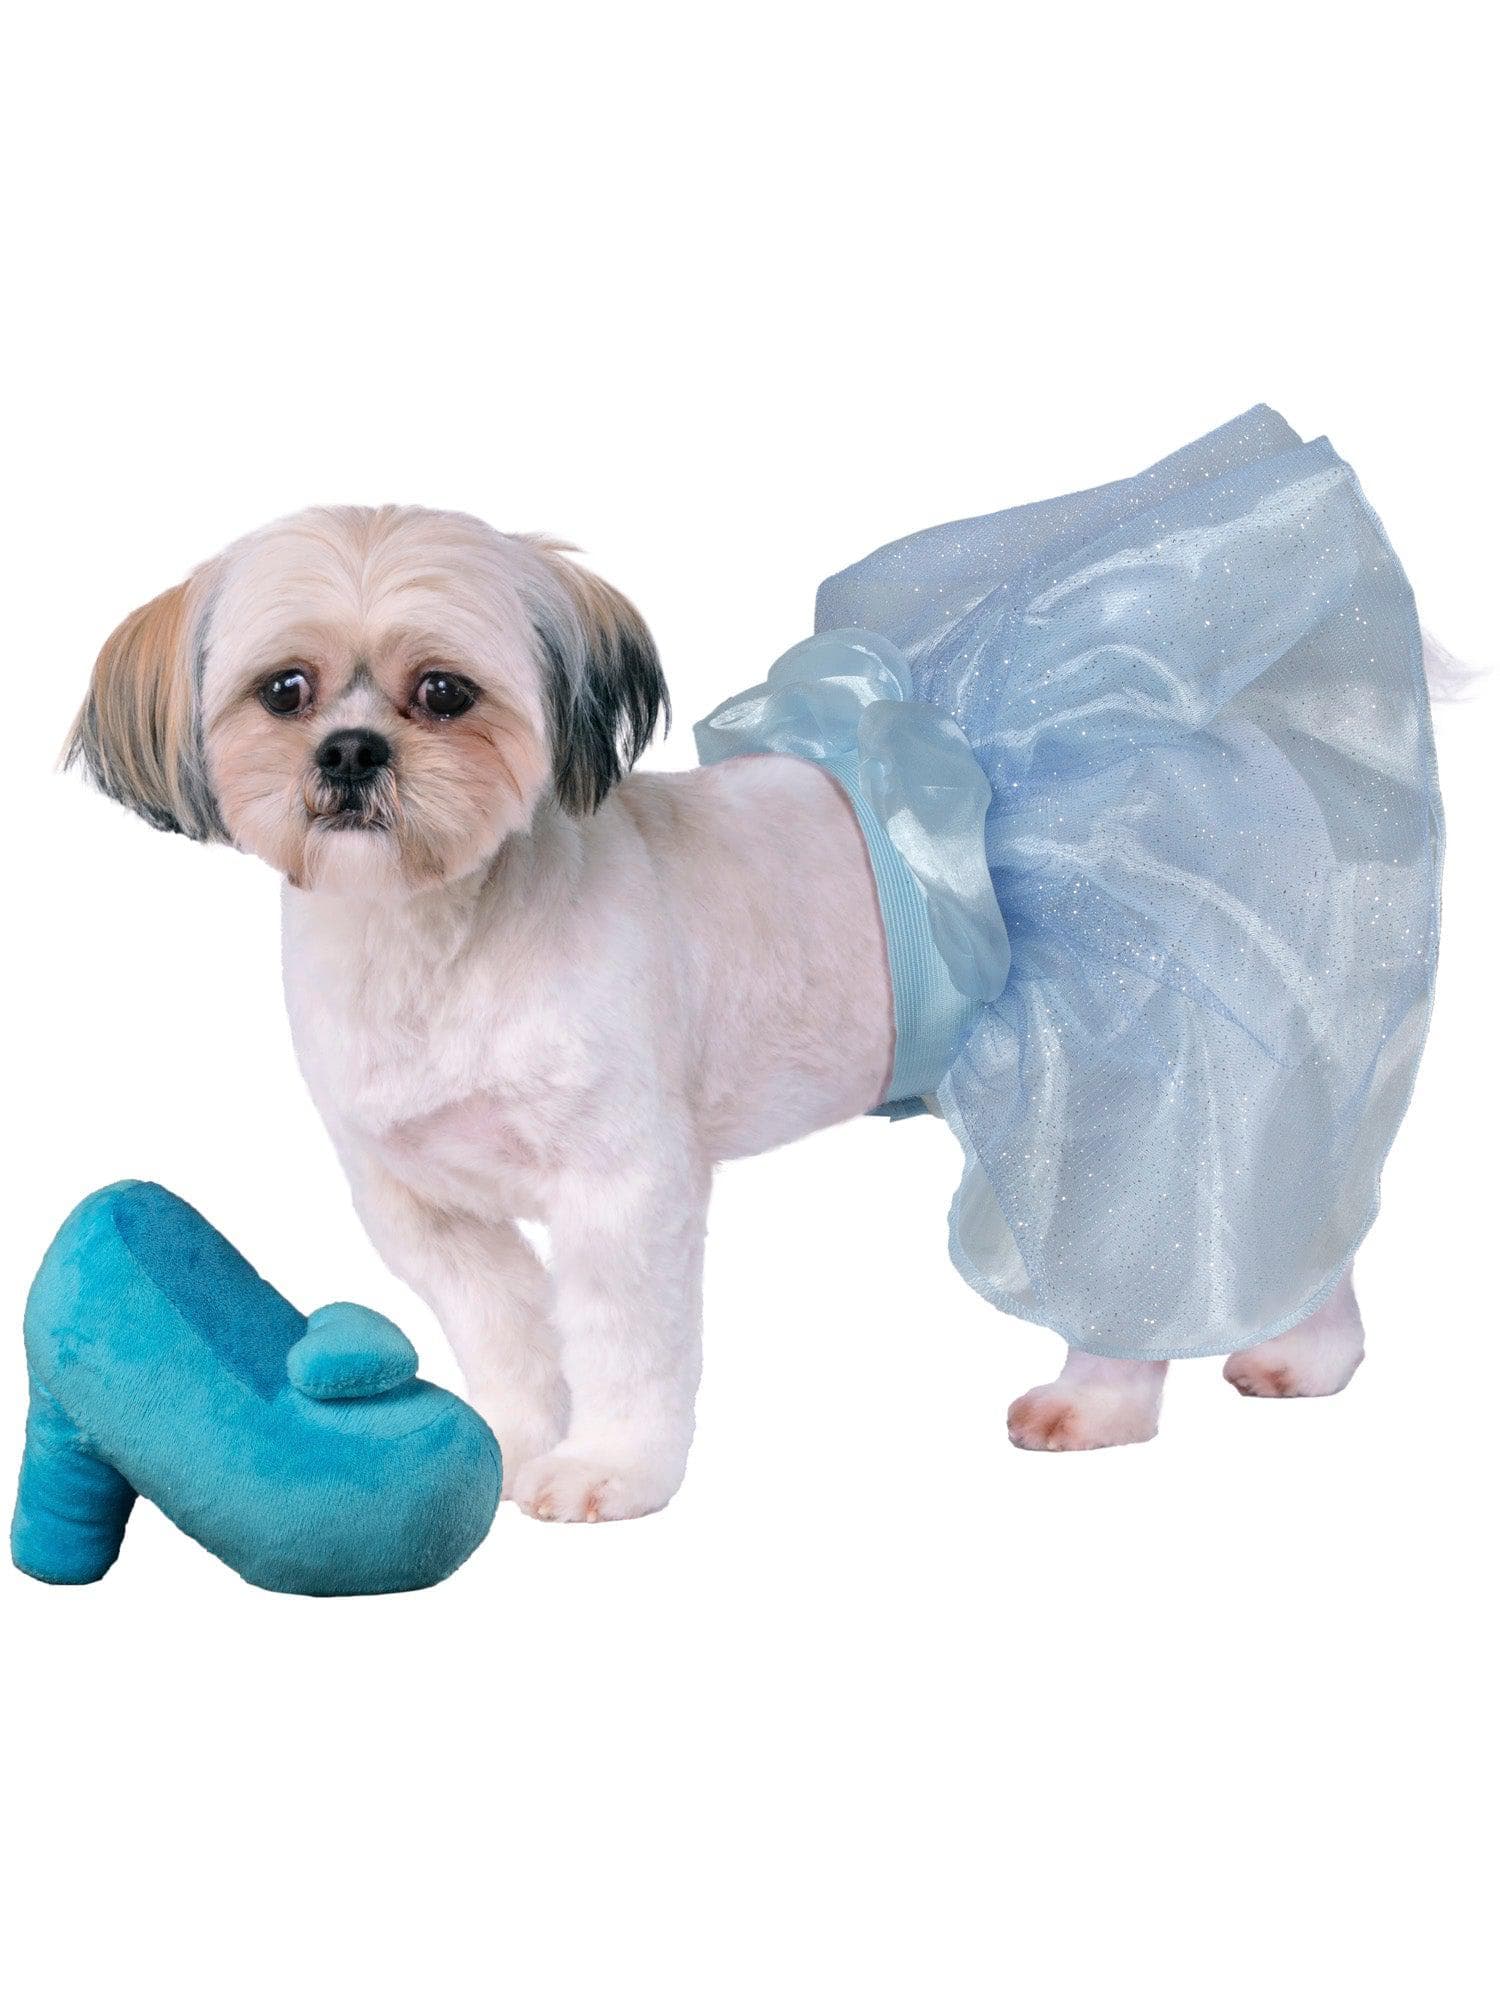 Cinderella Pet Tutu and Shoe Toy - costumes.com